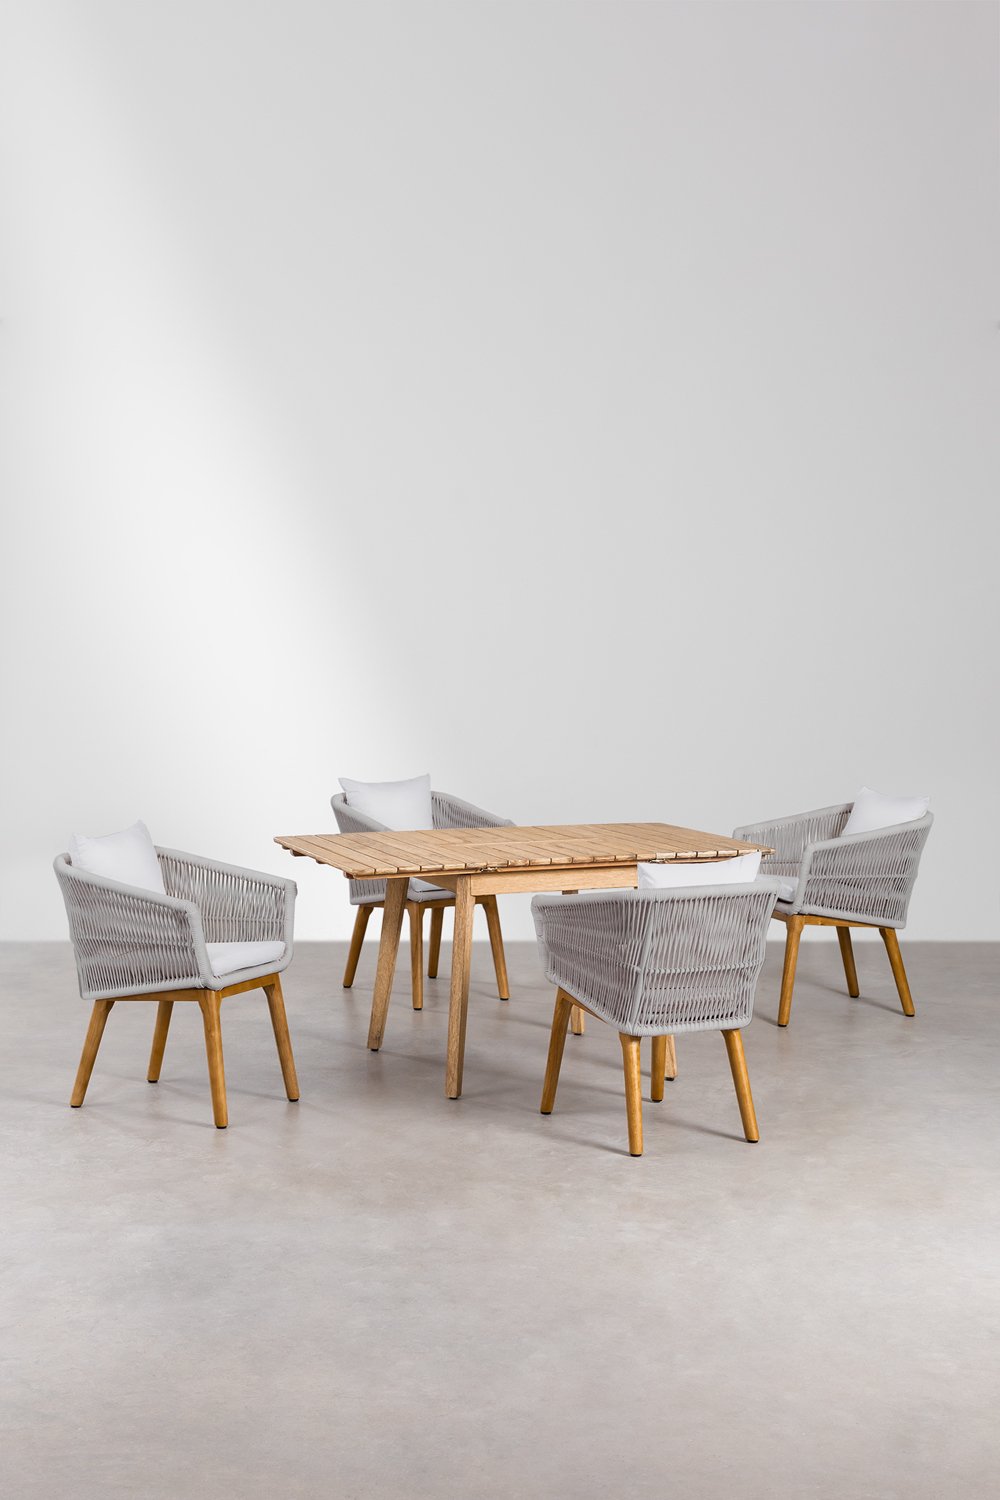 Drewniany stół rozkładany (90-150x90 cm) Naele i 4 krzesła ogrodowe Barker, obrazek w galerii 1